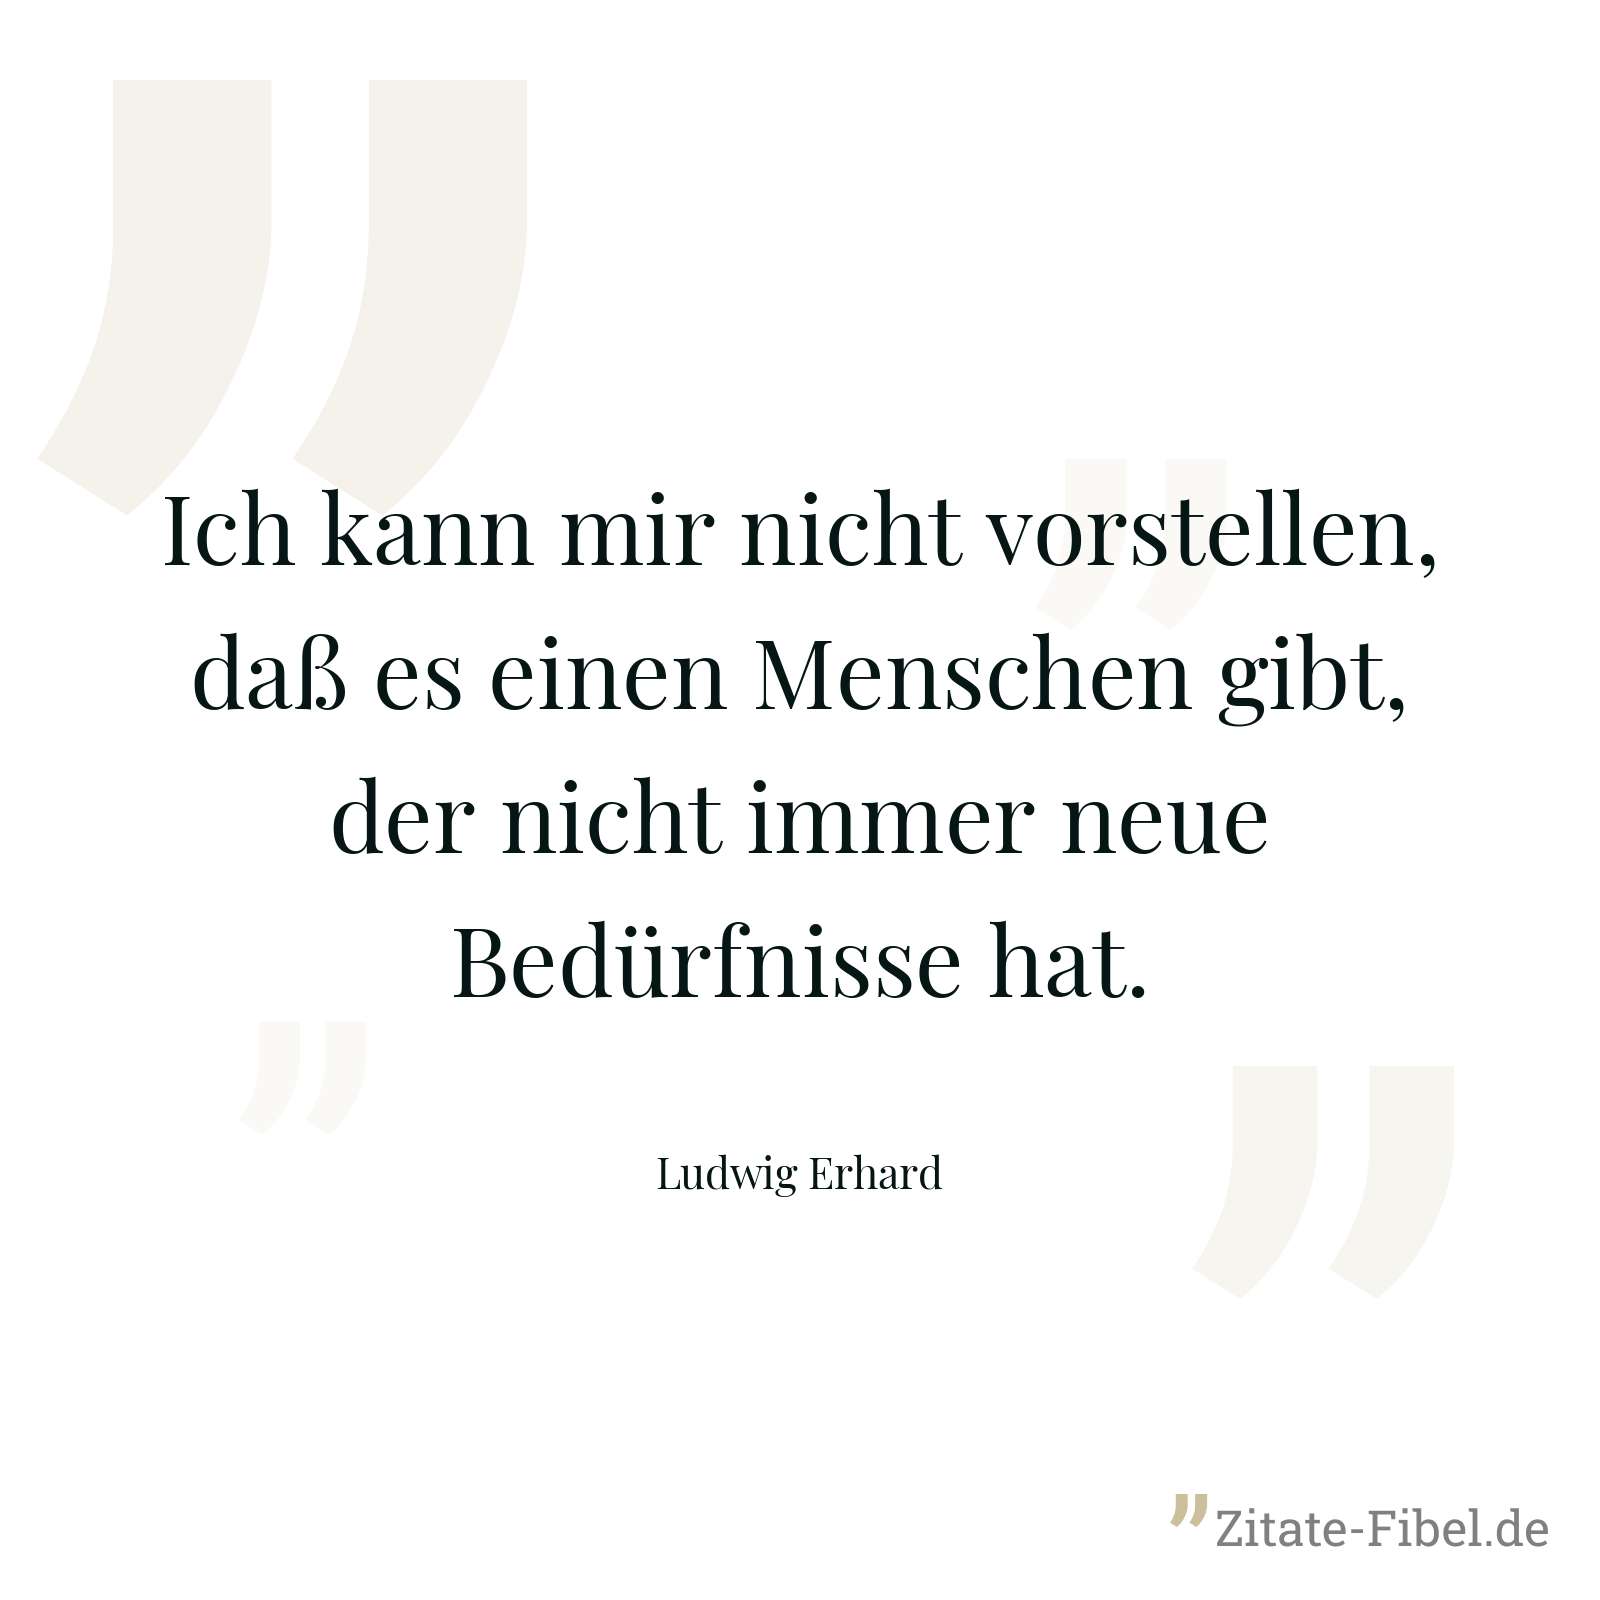 Ich kann mir nicht vorstellen, daß es einen Menschen gibt, der nicht immer neue Bedürfnisse hat. - Ludwig Erhard